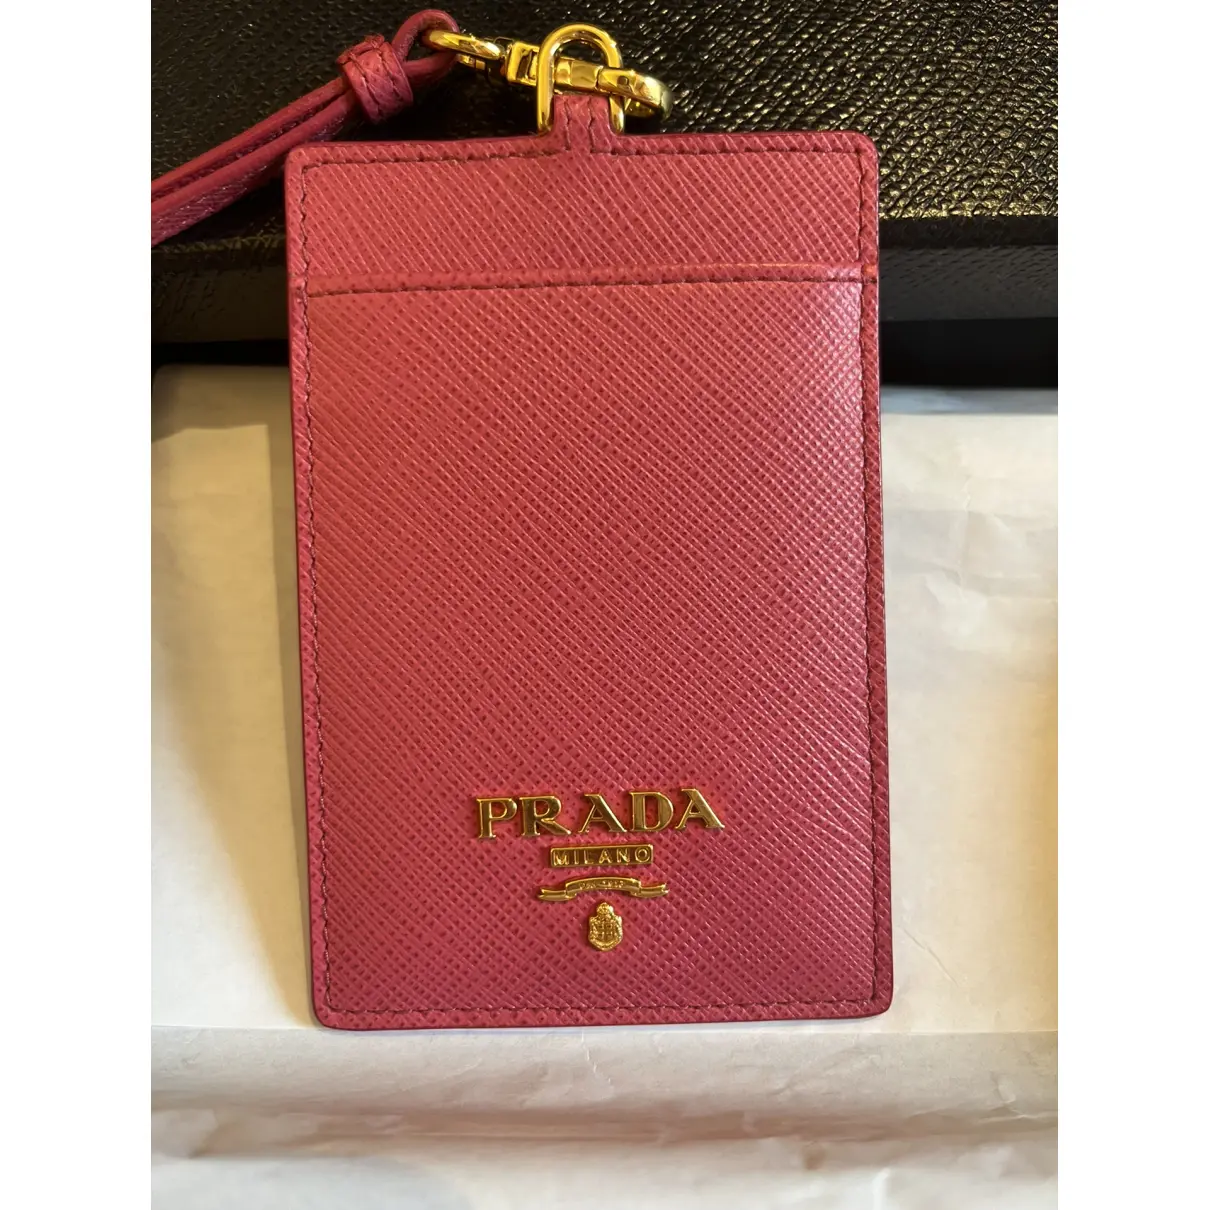 Buy Prada Card wallet online